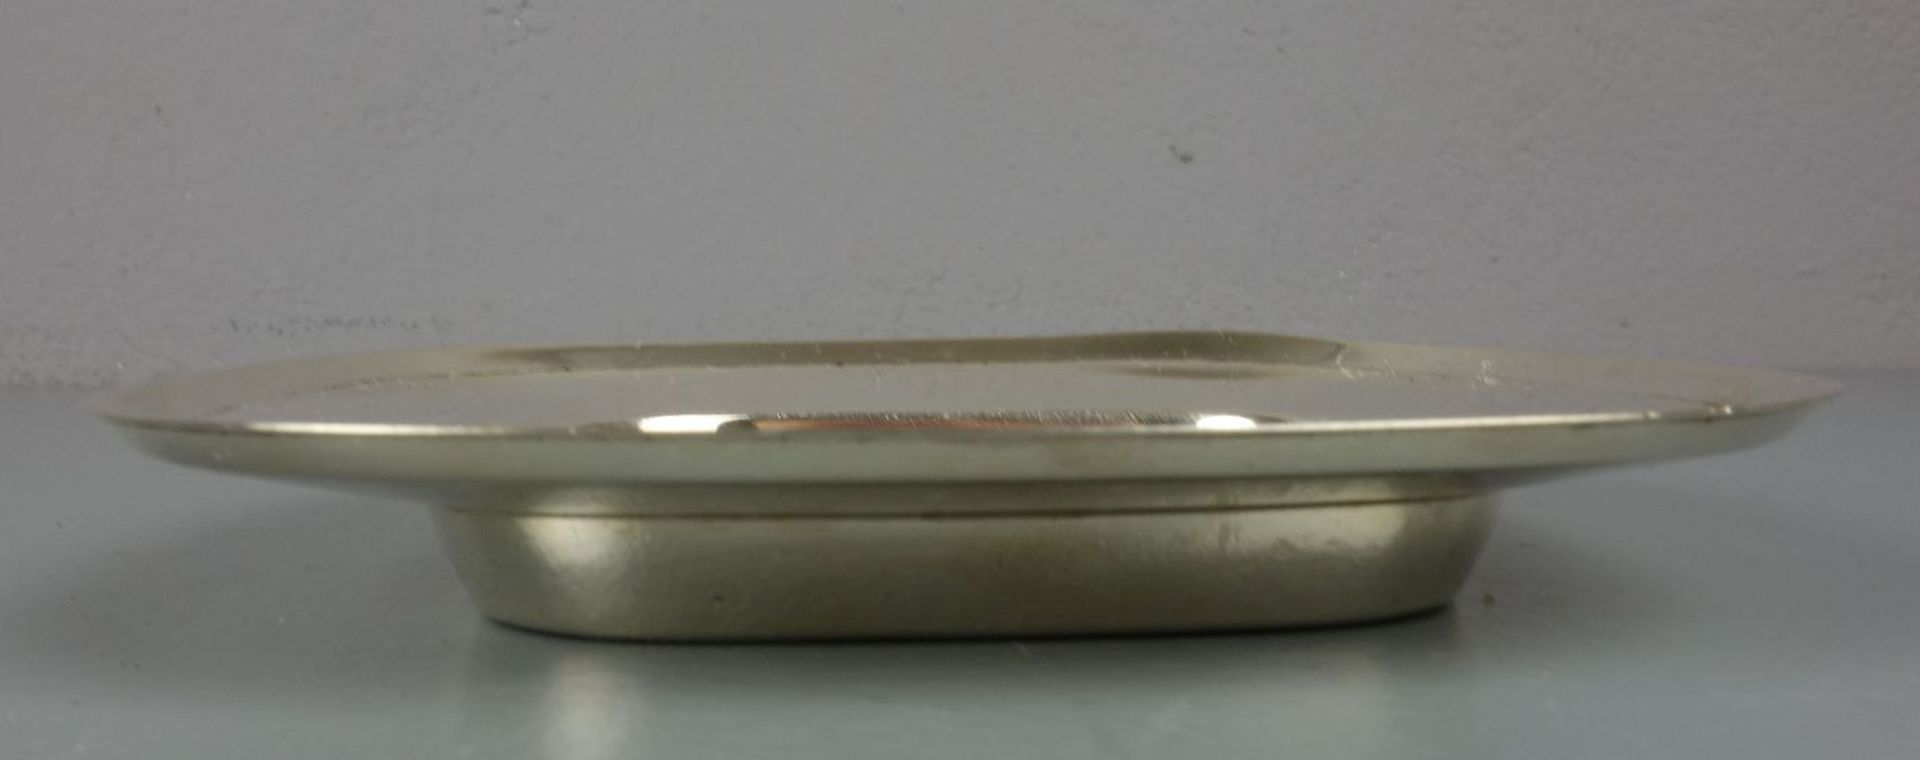 SCHALE / KARREESCHALE / silver bowl, 925er Silber (122 g), bezeichnet "Sterling", gepunzt mit - Image 3 of 3